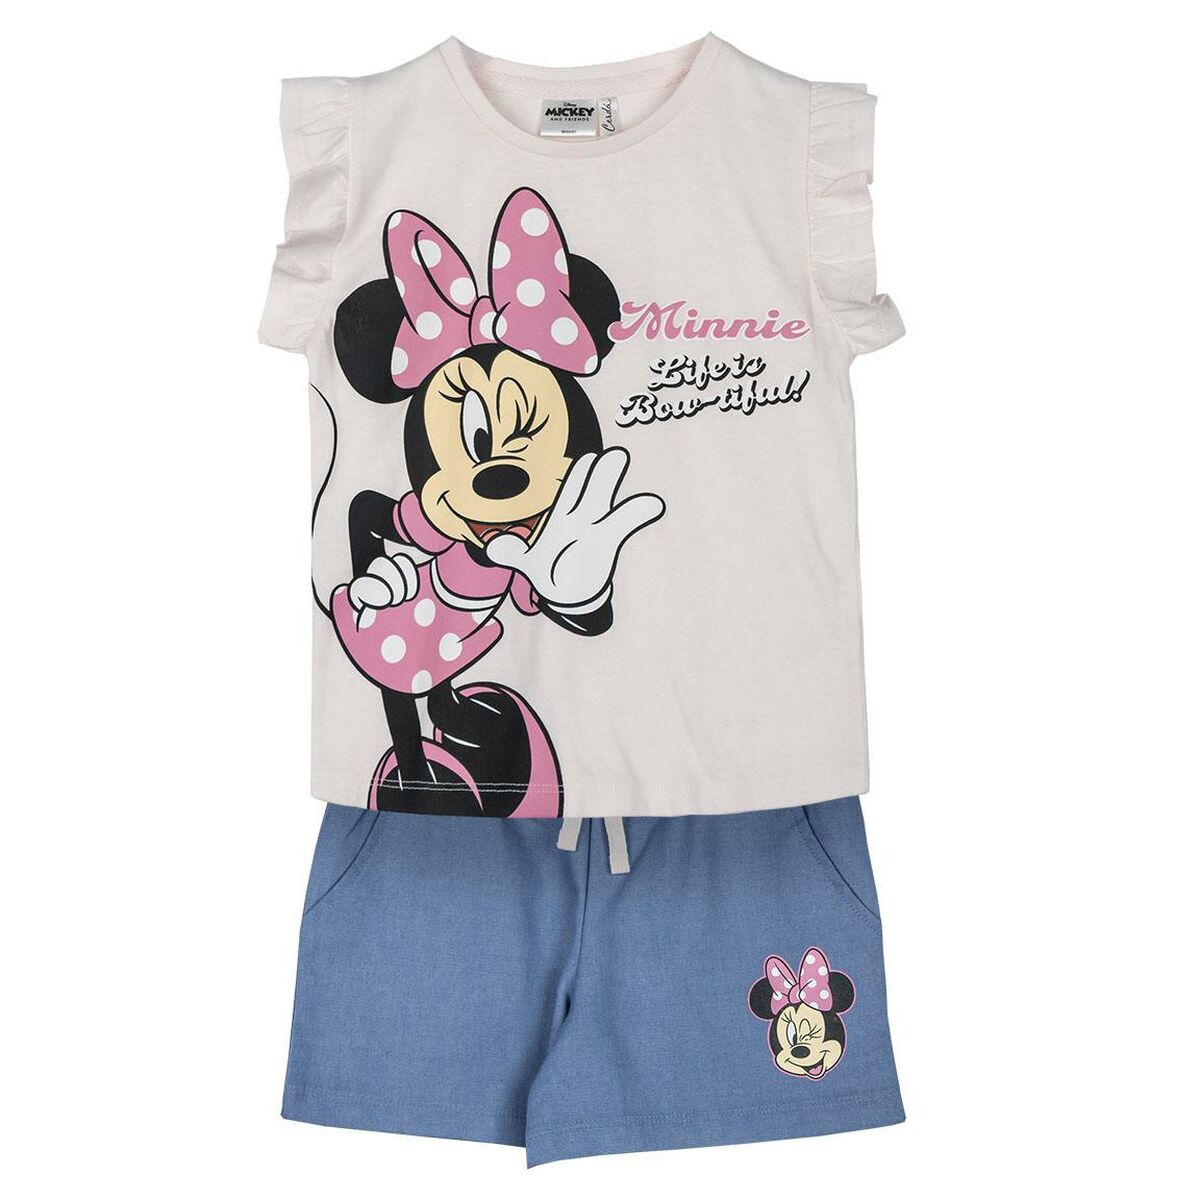 Ensemble de Vêtements Minnie Mouse Rose clair